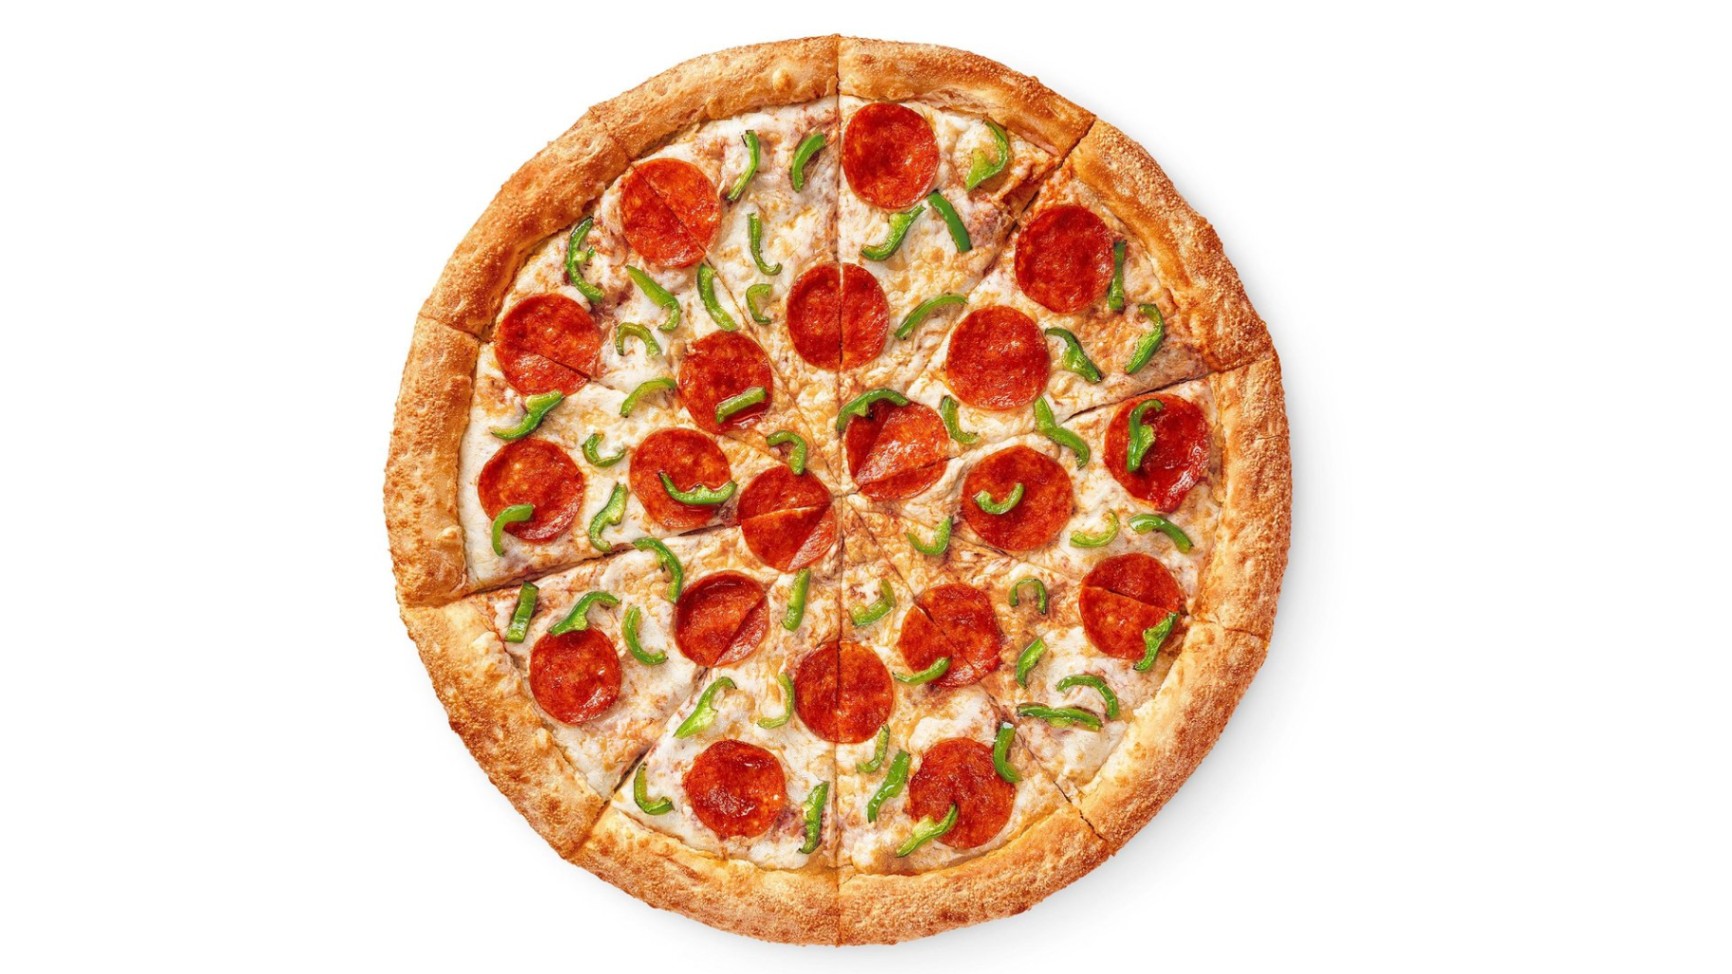 сколько калорий в одном кусочке пиццы пепперони додо фото 116